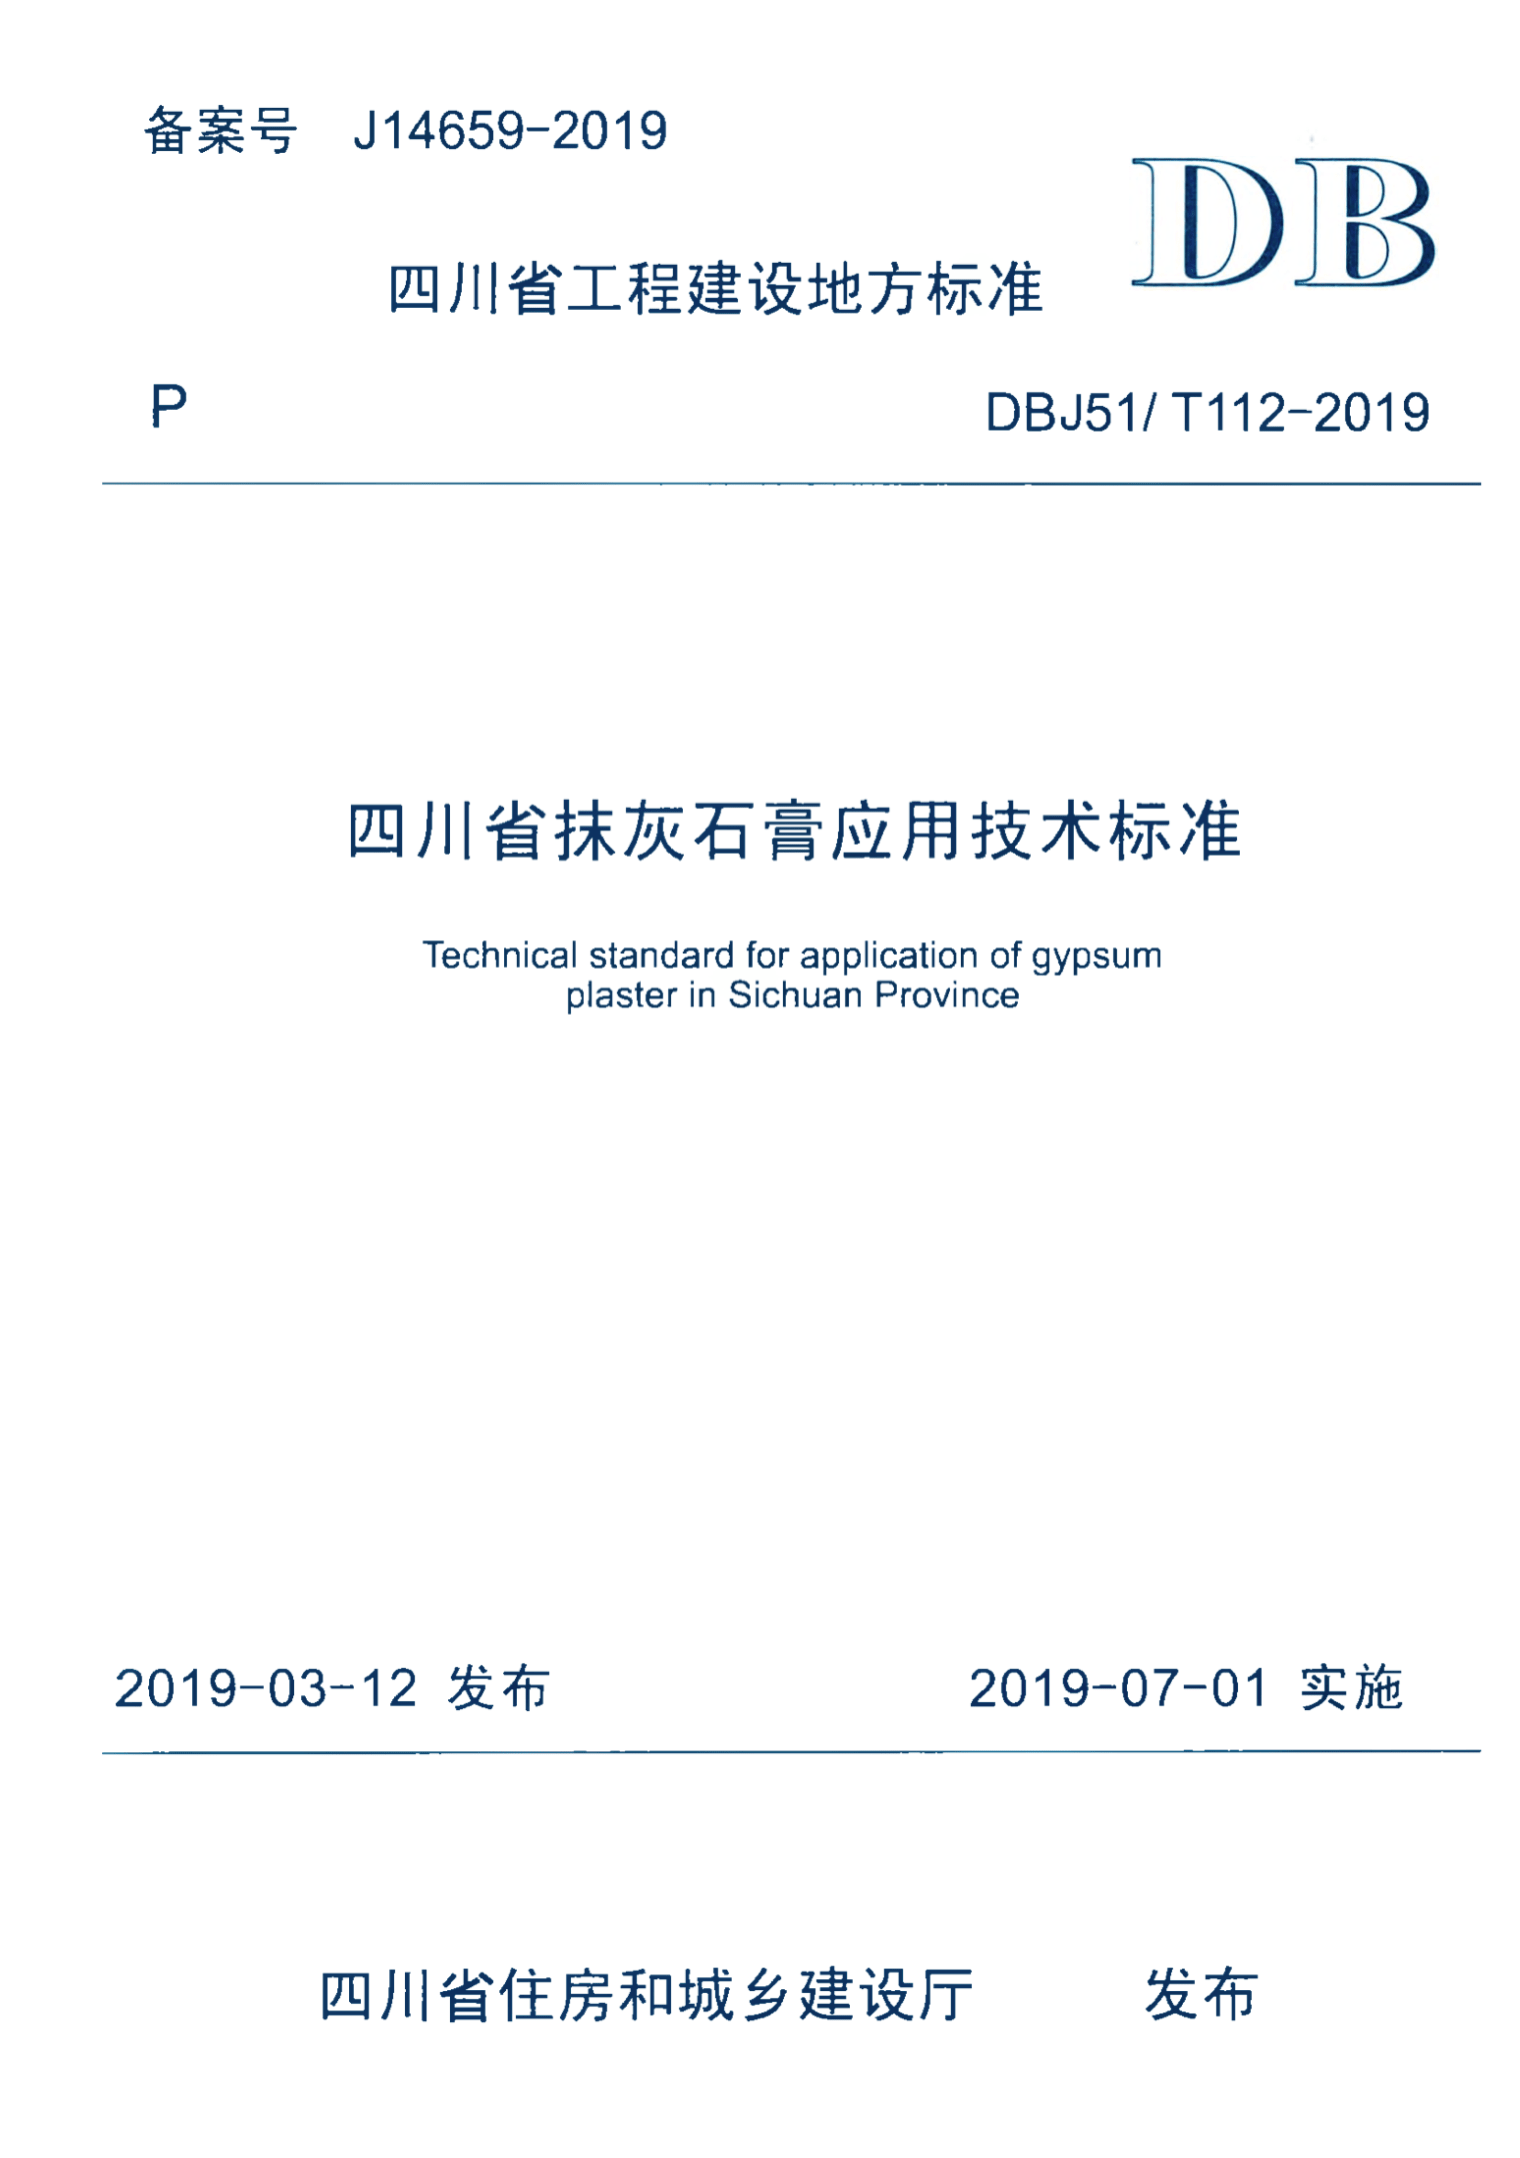 DBJ51/T 112-2019 四川省抹灰石膏应用技术标准